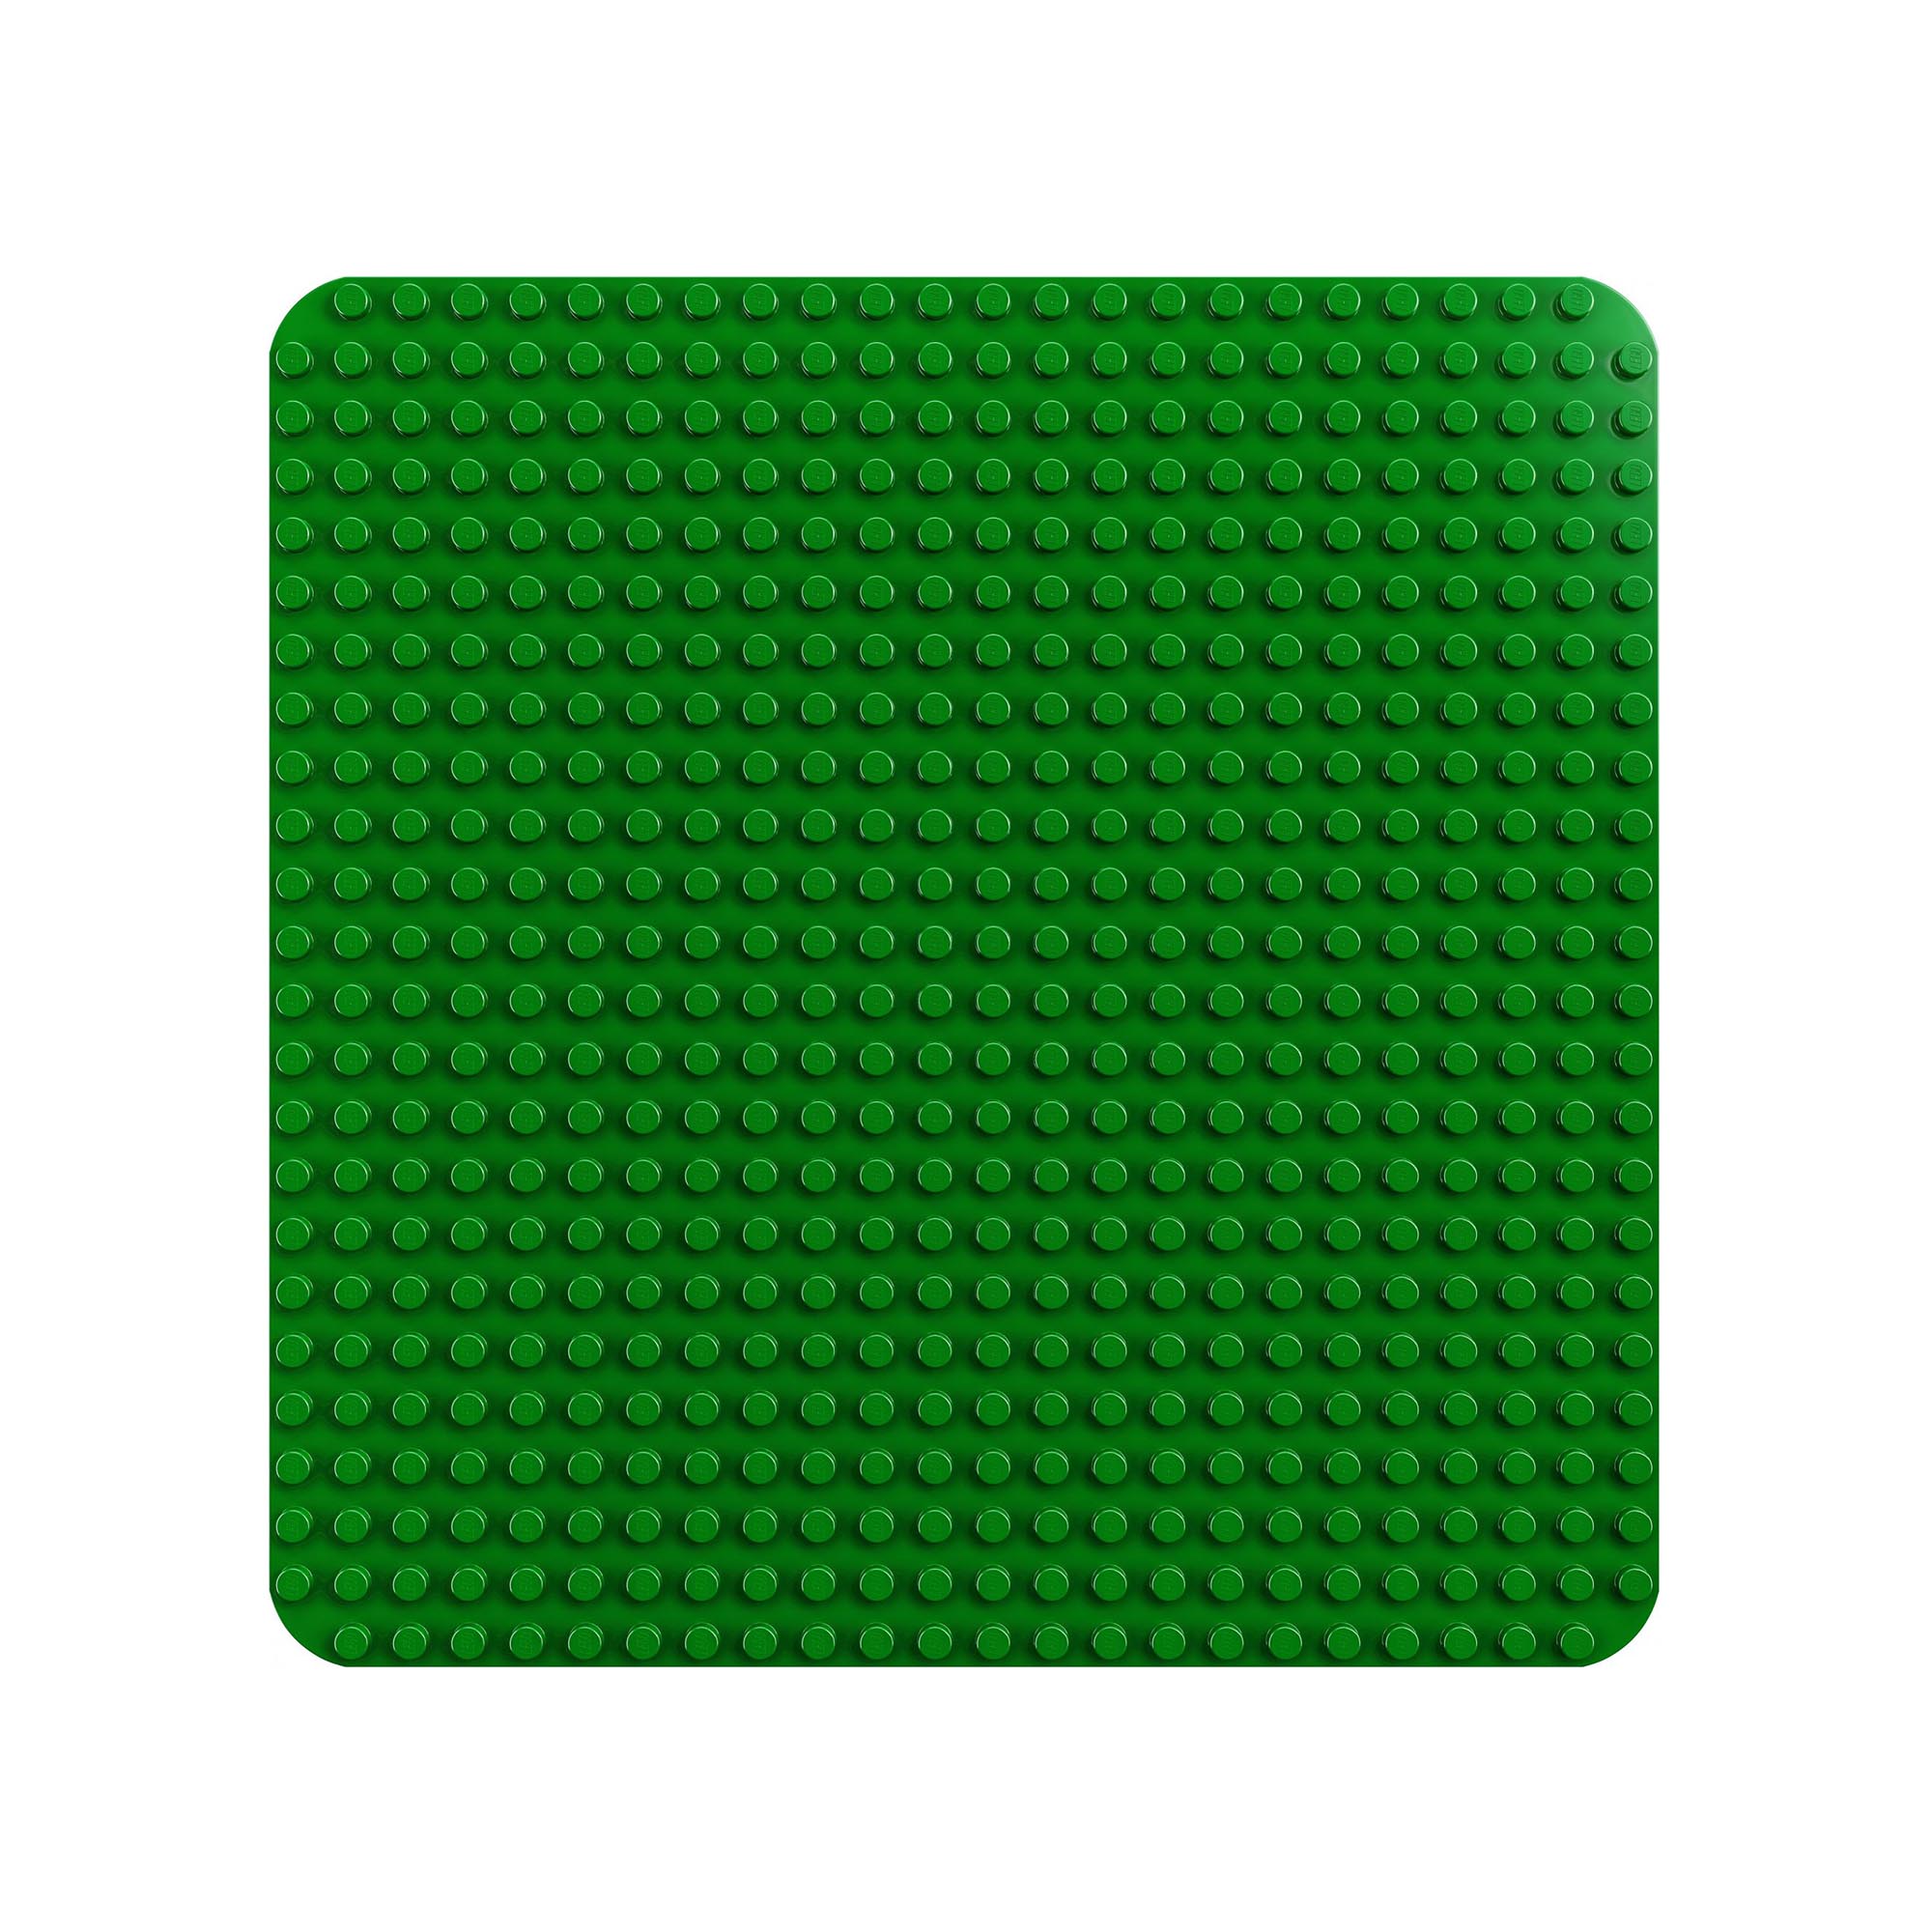 LEGO DUPLO Base Verde, Tavola Classica per Mattoncini, Piattaforma Giocattolo, S 10980, , large